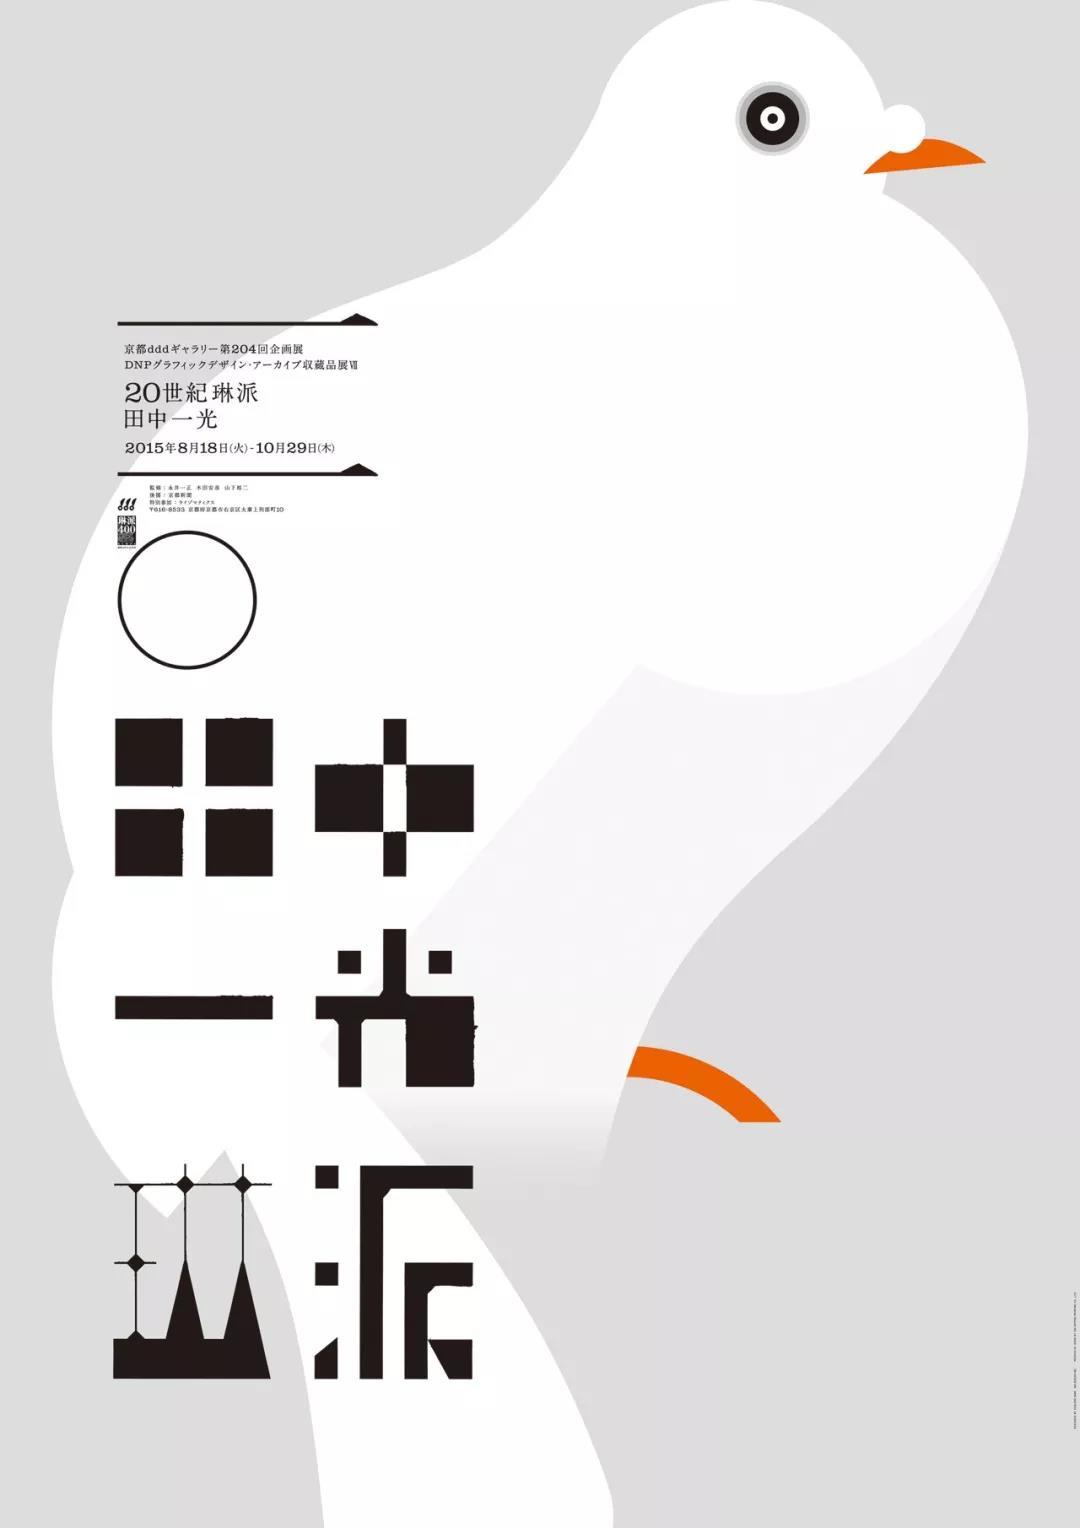 一组艺术展览主题的日本海报设计分享